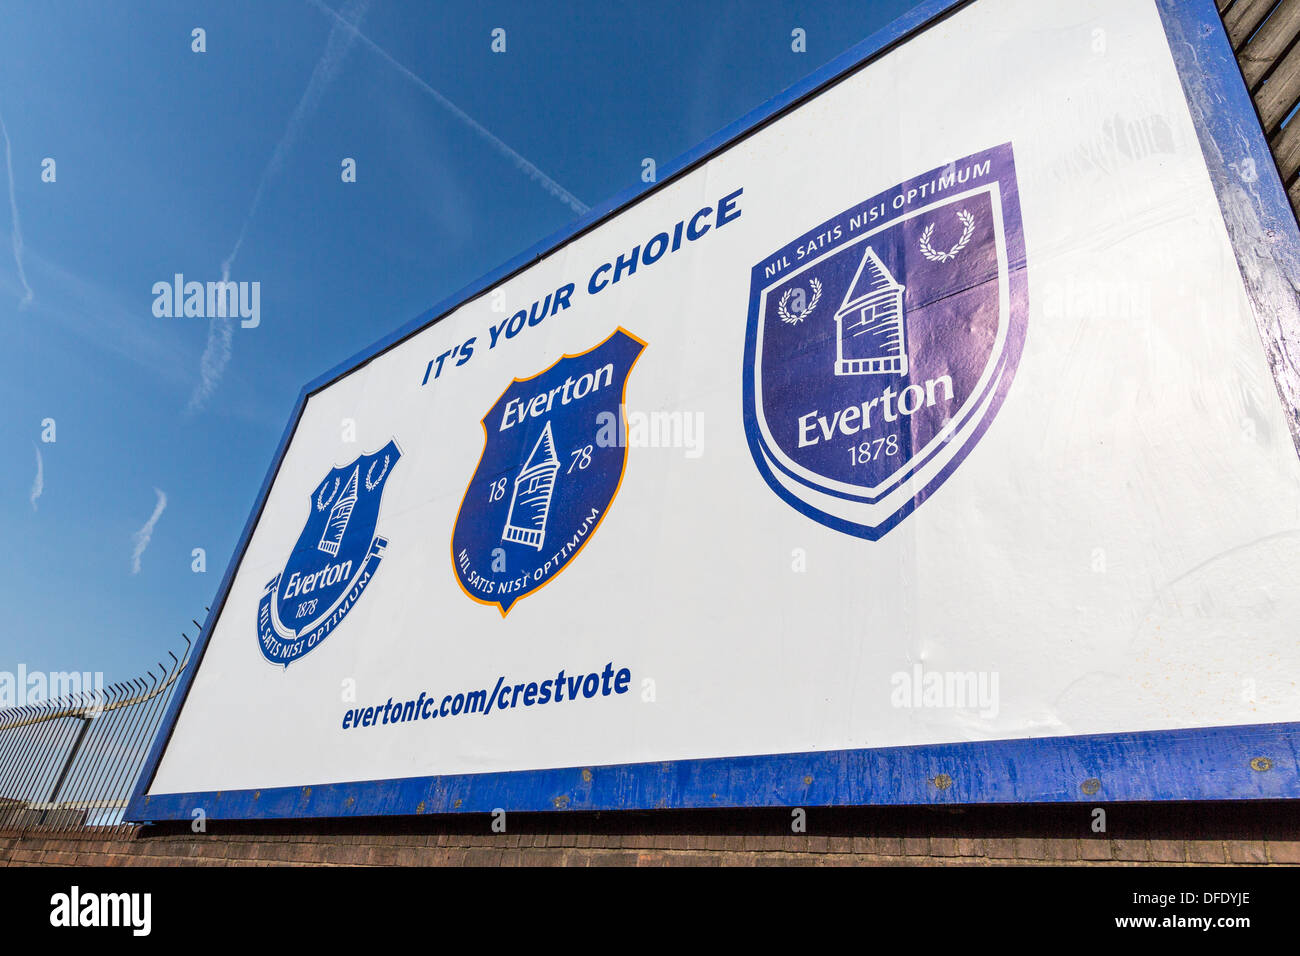 Un acaparamiento fuera de Goodison Park de Liverpool, mostrando las tres opciones de cresta de Everton FC. El nuevo CREST está a la izquierda. Foto de stock